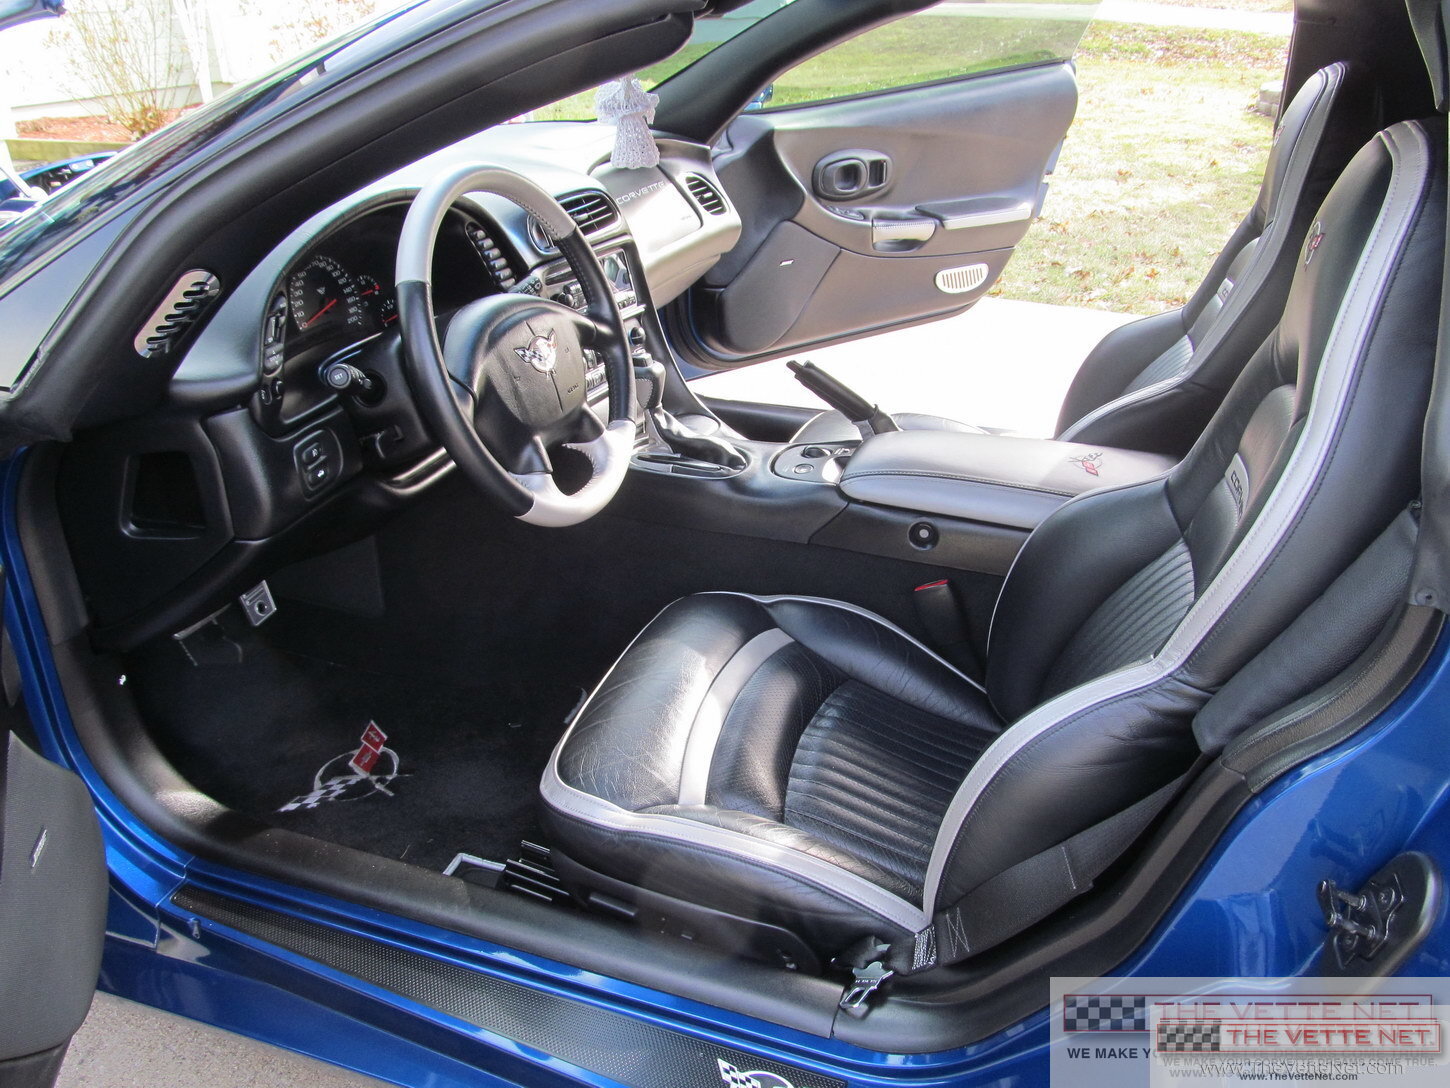 2002 Corvette Coupe Electron Blue